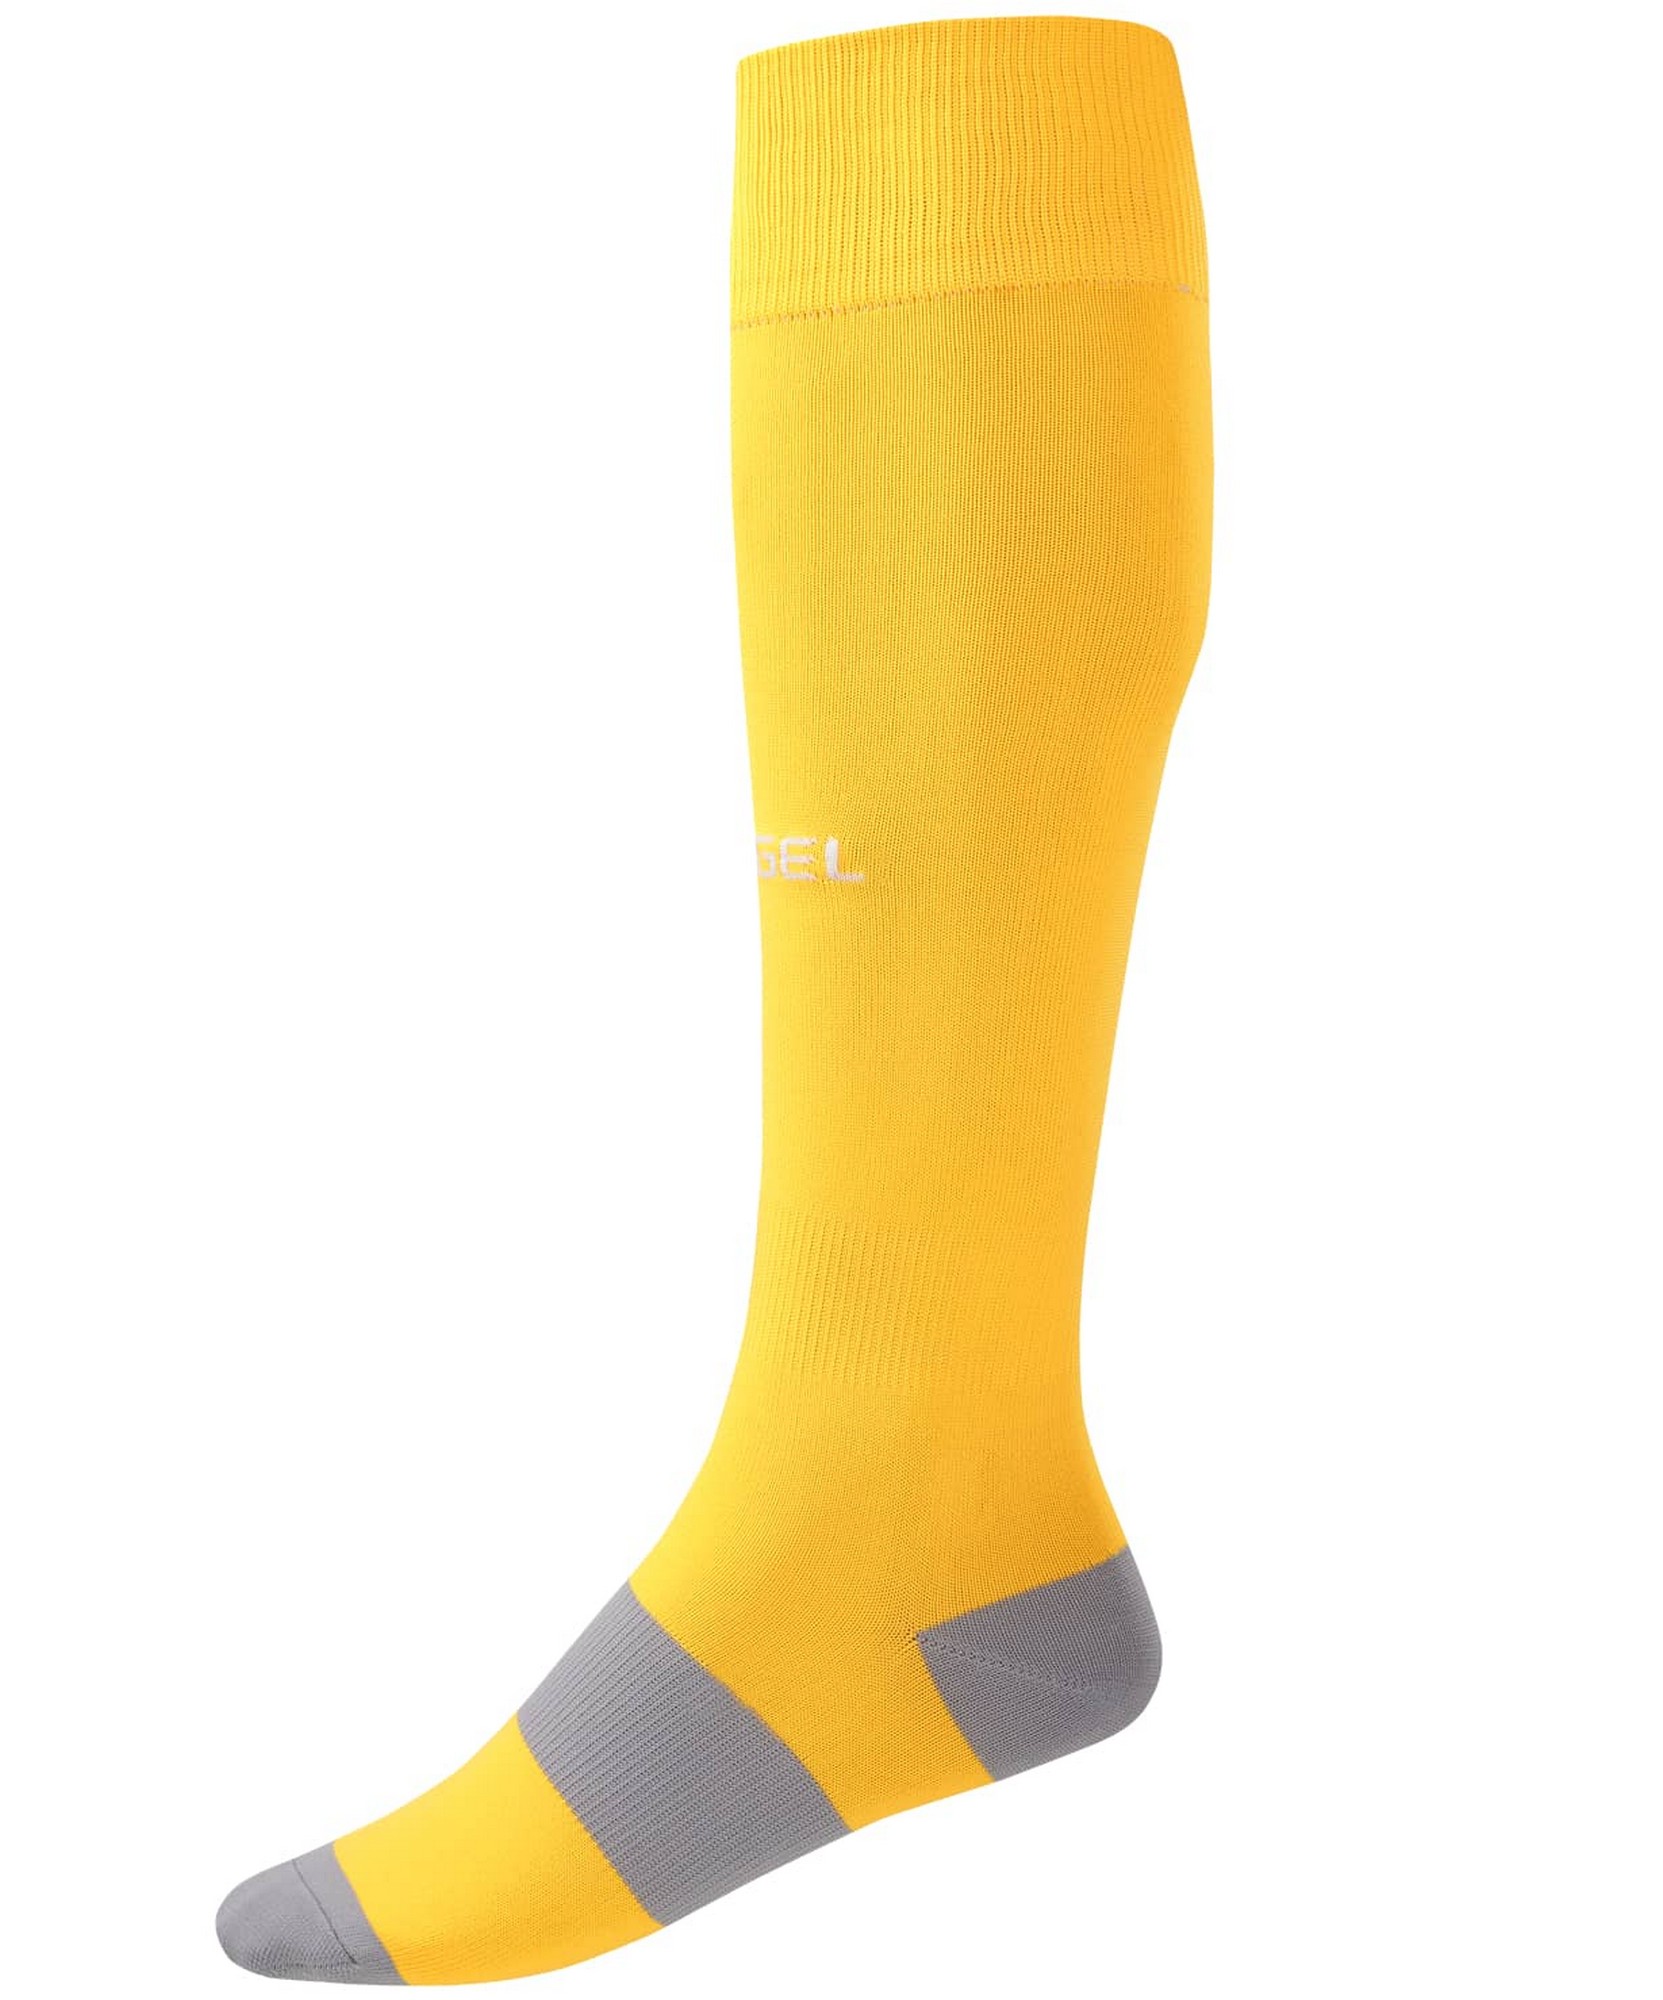 Купить Гетры футбольные Jögel Camp Basic Socks, желтыйсерыйбелый,